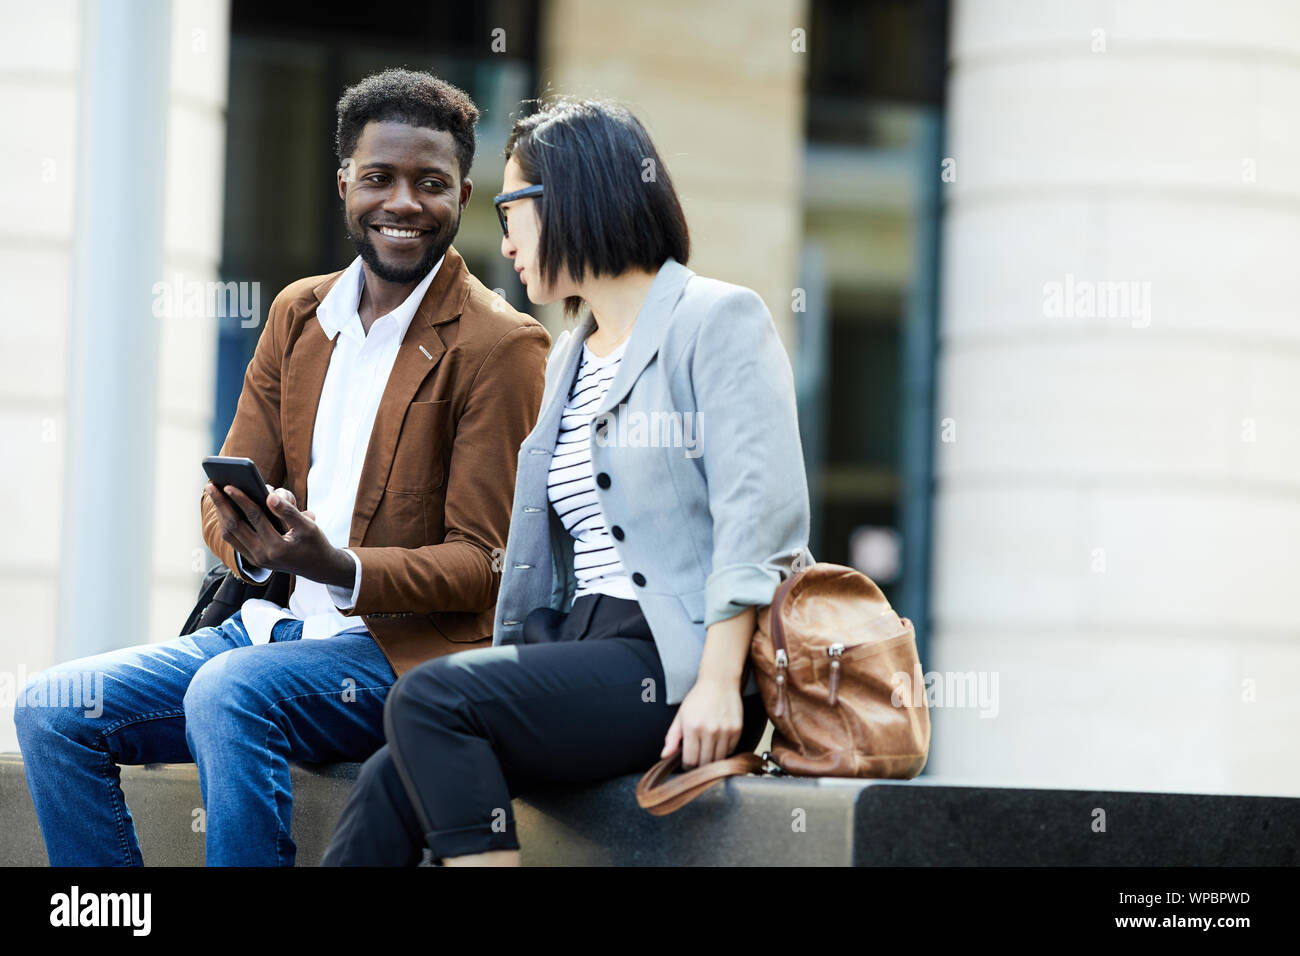 Retrato de dos jóvenes empresarios relajarse al aire libre durante el rodaje, africanos hombre y mujer asiática charlando alegremente, espacio de copia Foto de stock